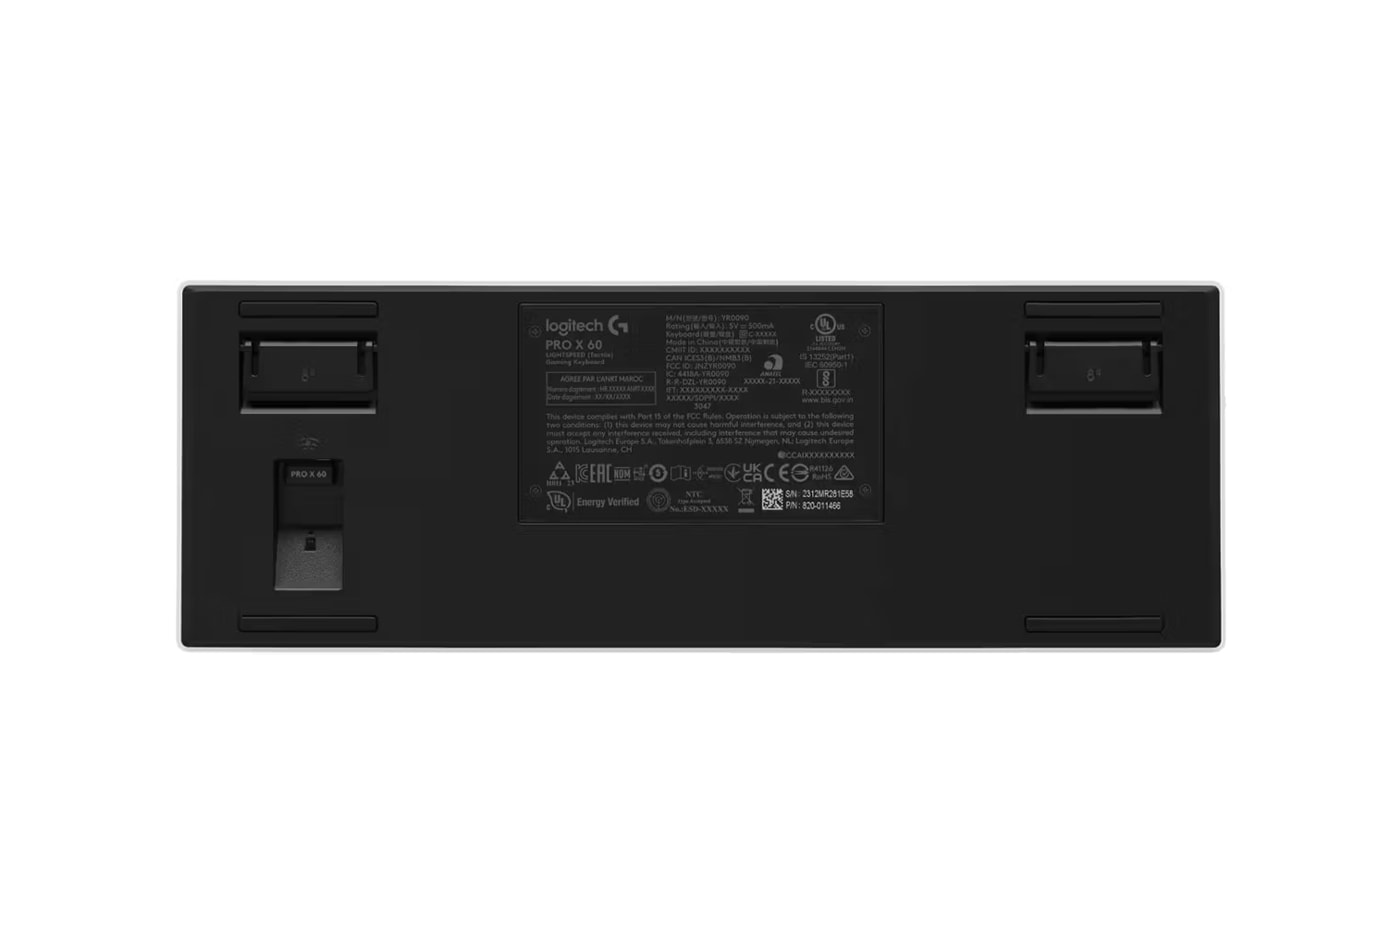 Logitech G представляет беспроводную игровую клавиатуру PRO X 60 Razer Higround Esports